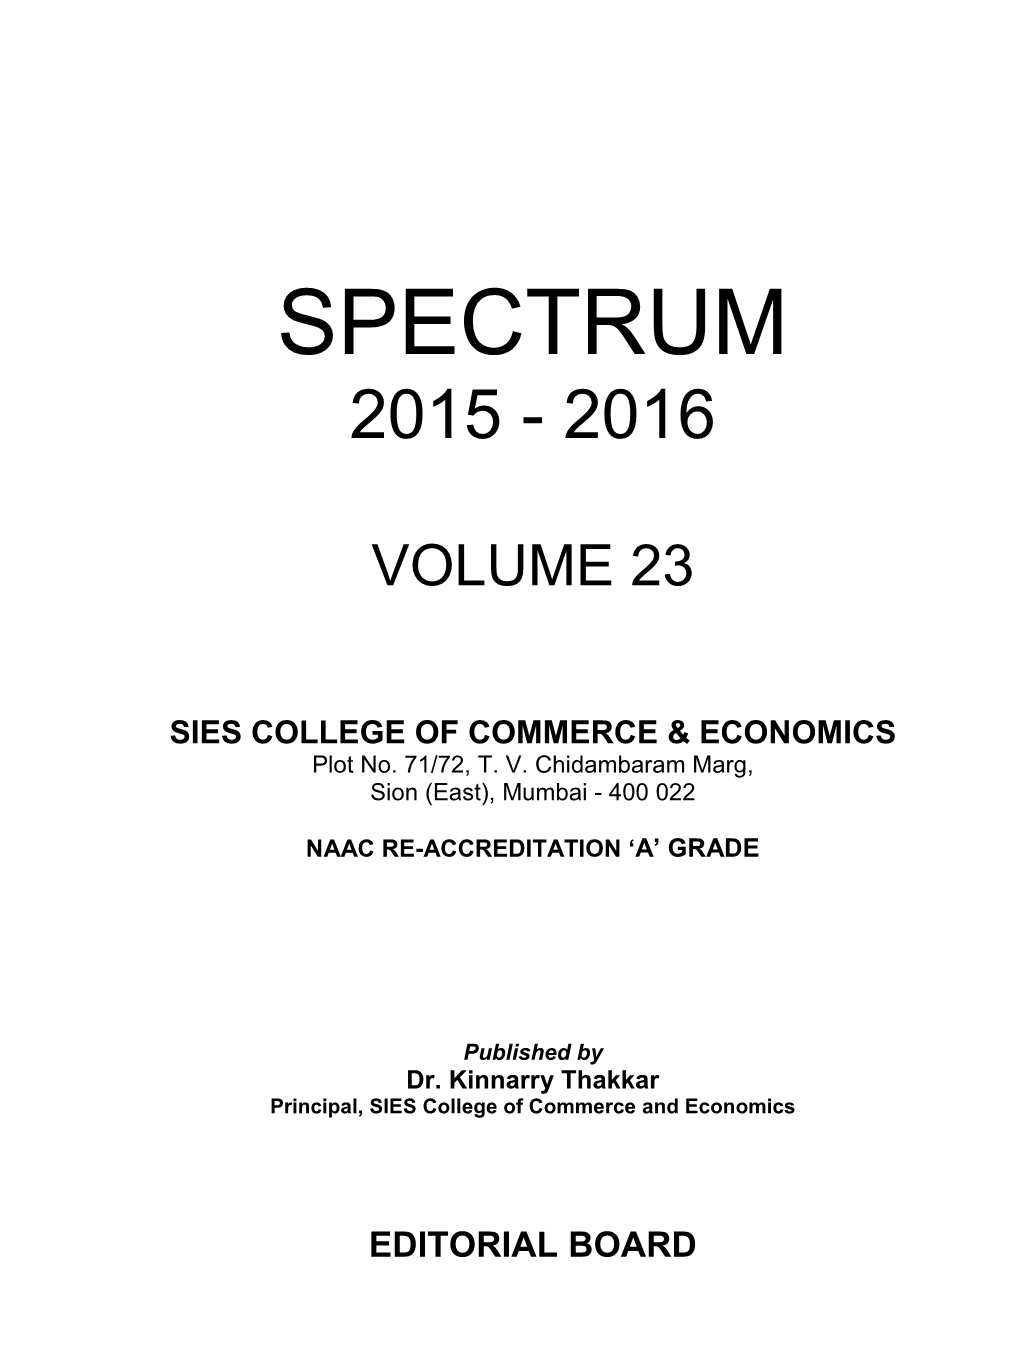 Spectrum 2015-2016